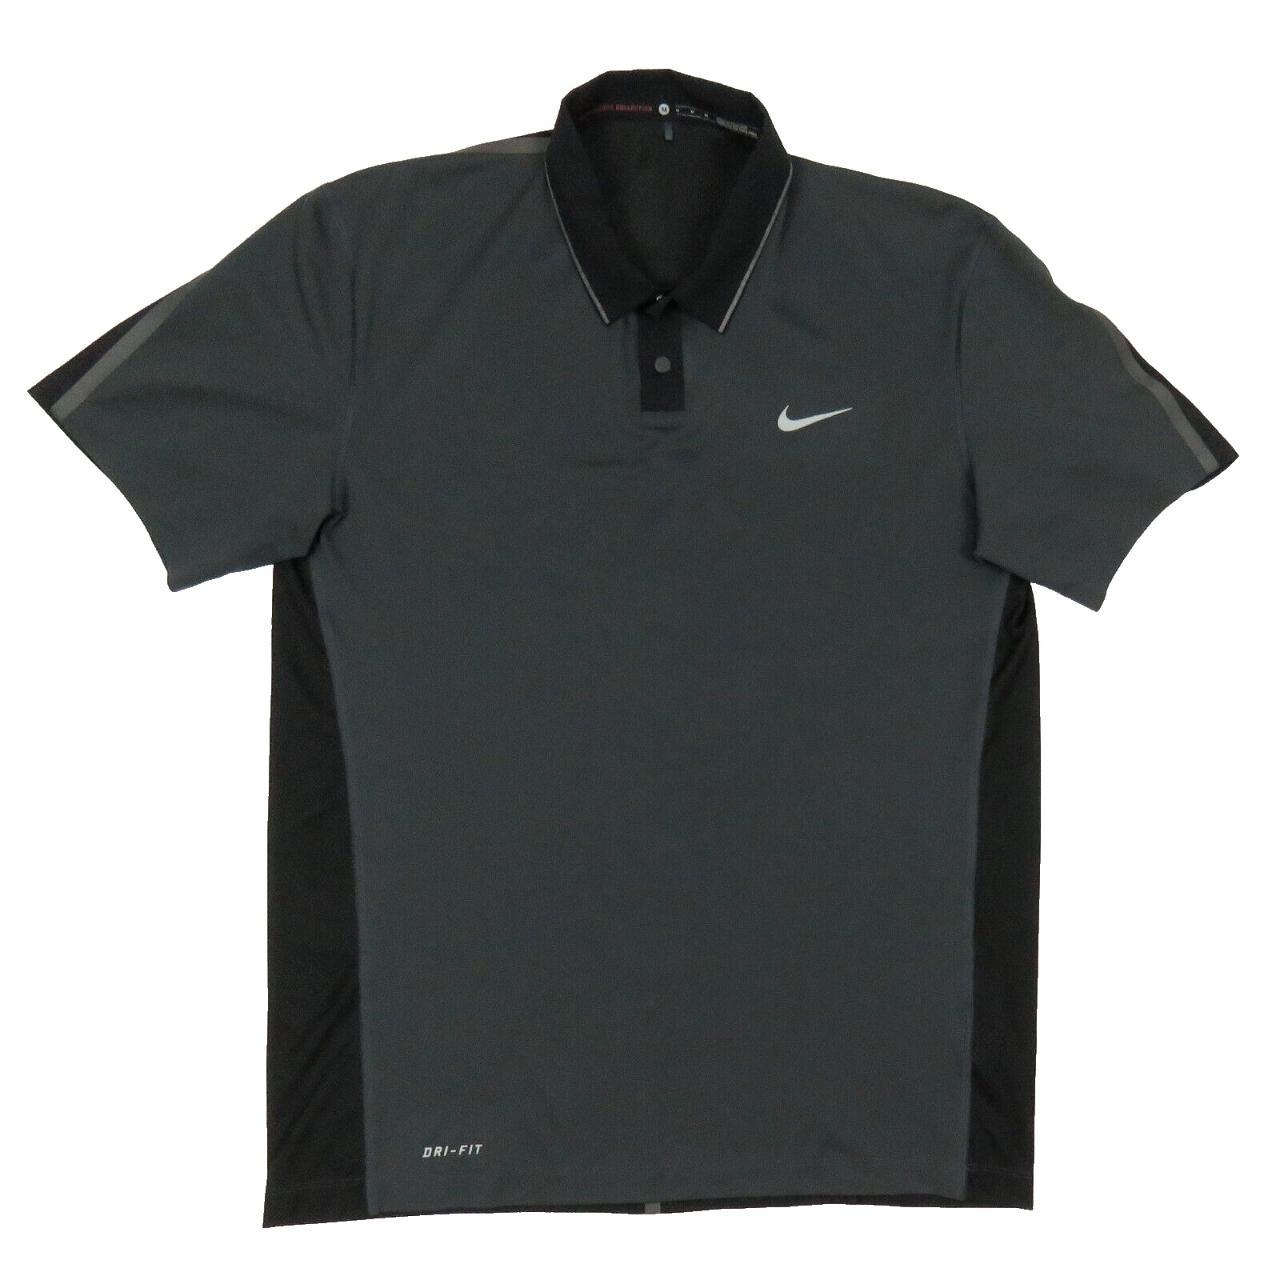 Tiger Woods Collection Nike Men's Men's Dri Fit Golf... - Depop